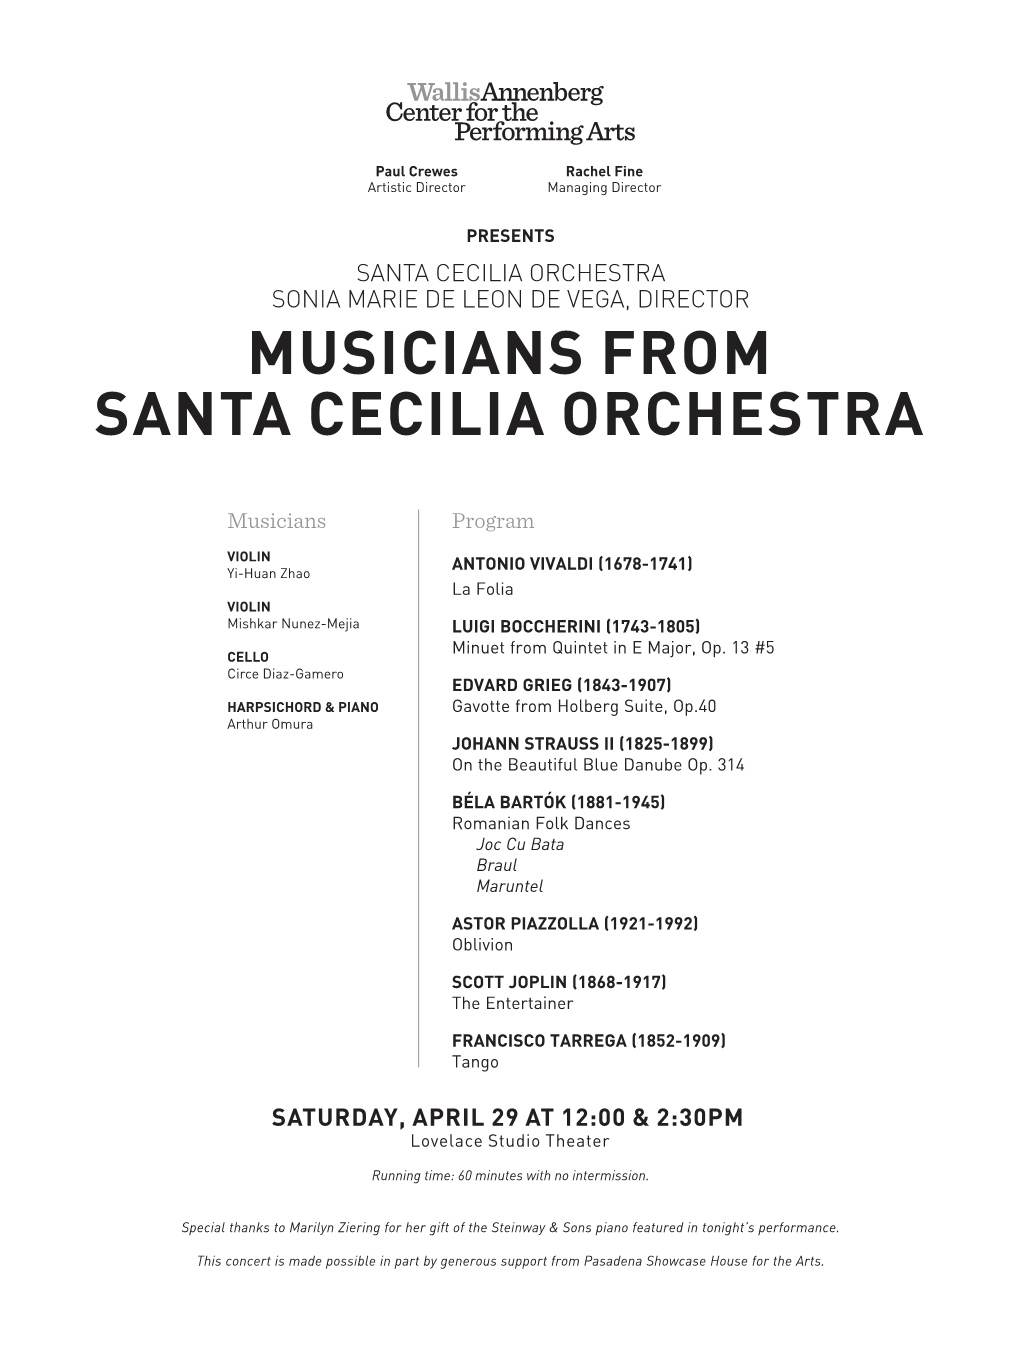 Musicians from Santa Cecilia Orchestra